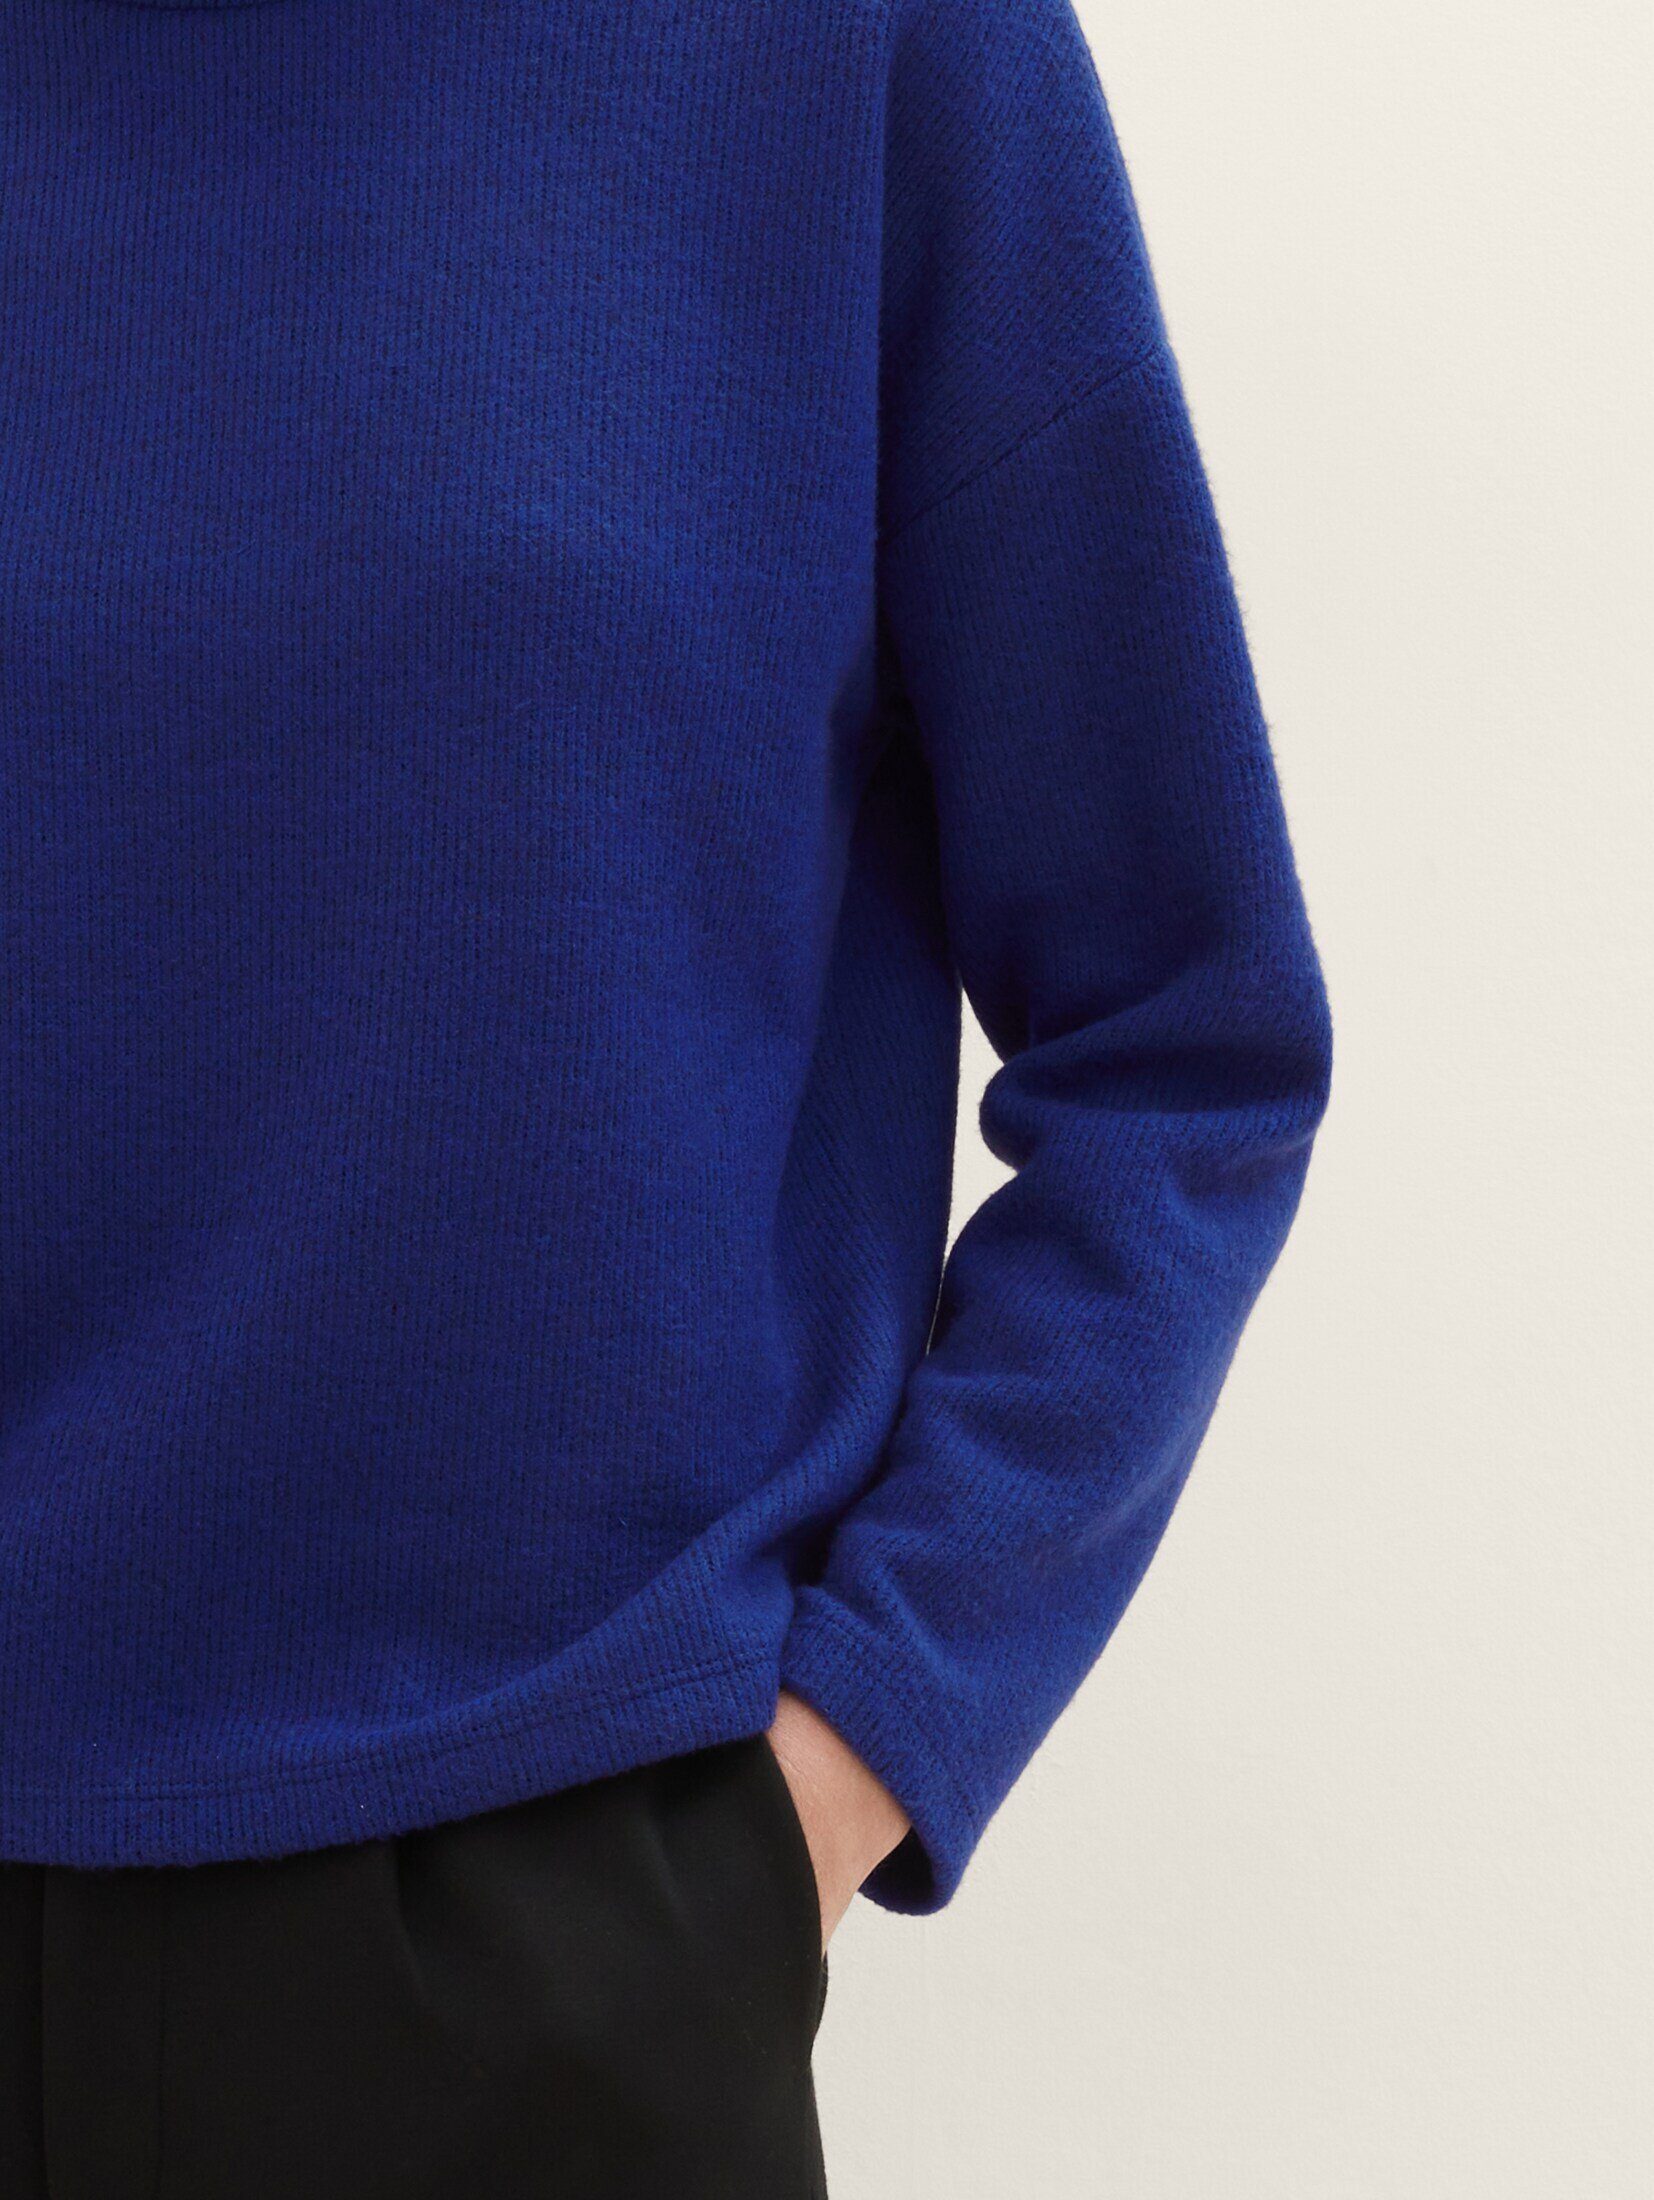 blue crest melange mit TAILOR Bequemes Rollkragen Sweatshirt Sweatshirt TOM